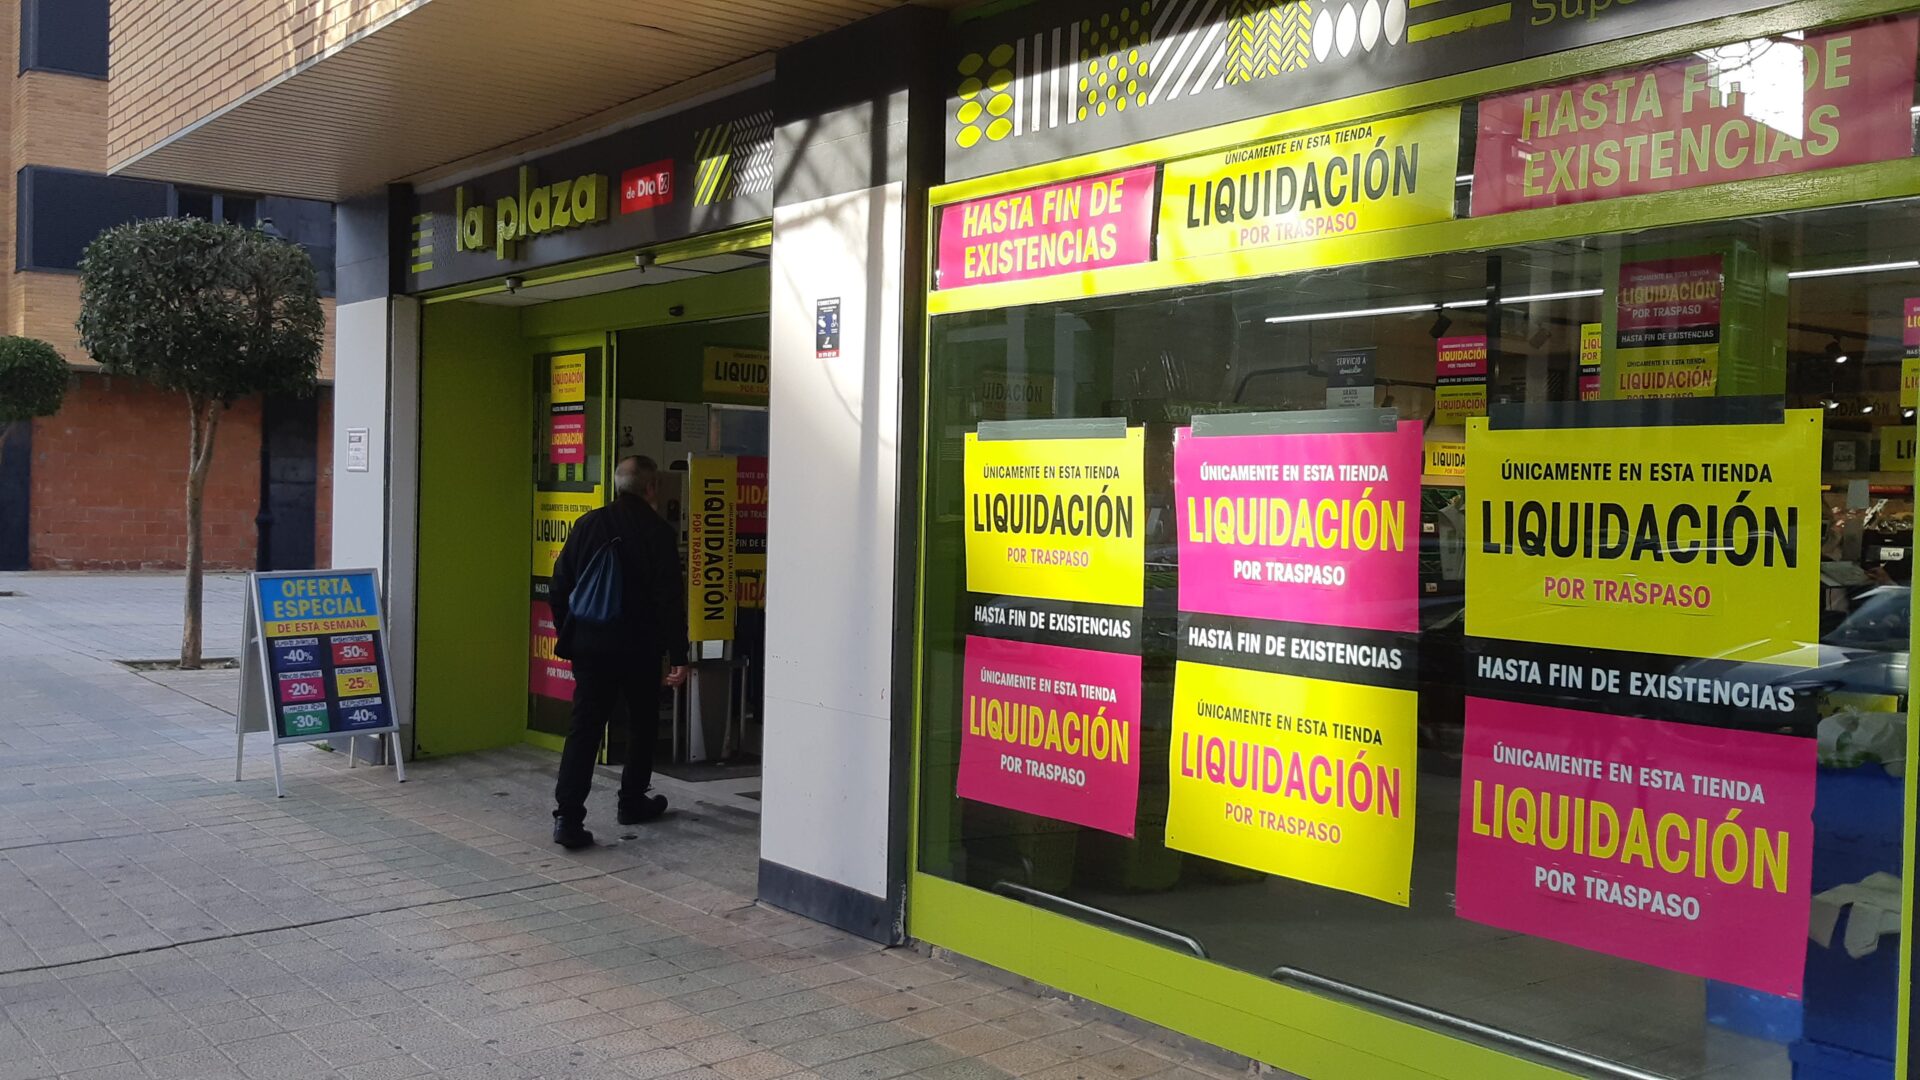 Alcampo-acelera-expansión-Castilla-León-con-65-supermercados-adquiridos -DIA-cinco-Palencia